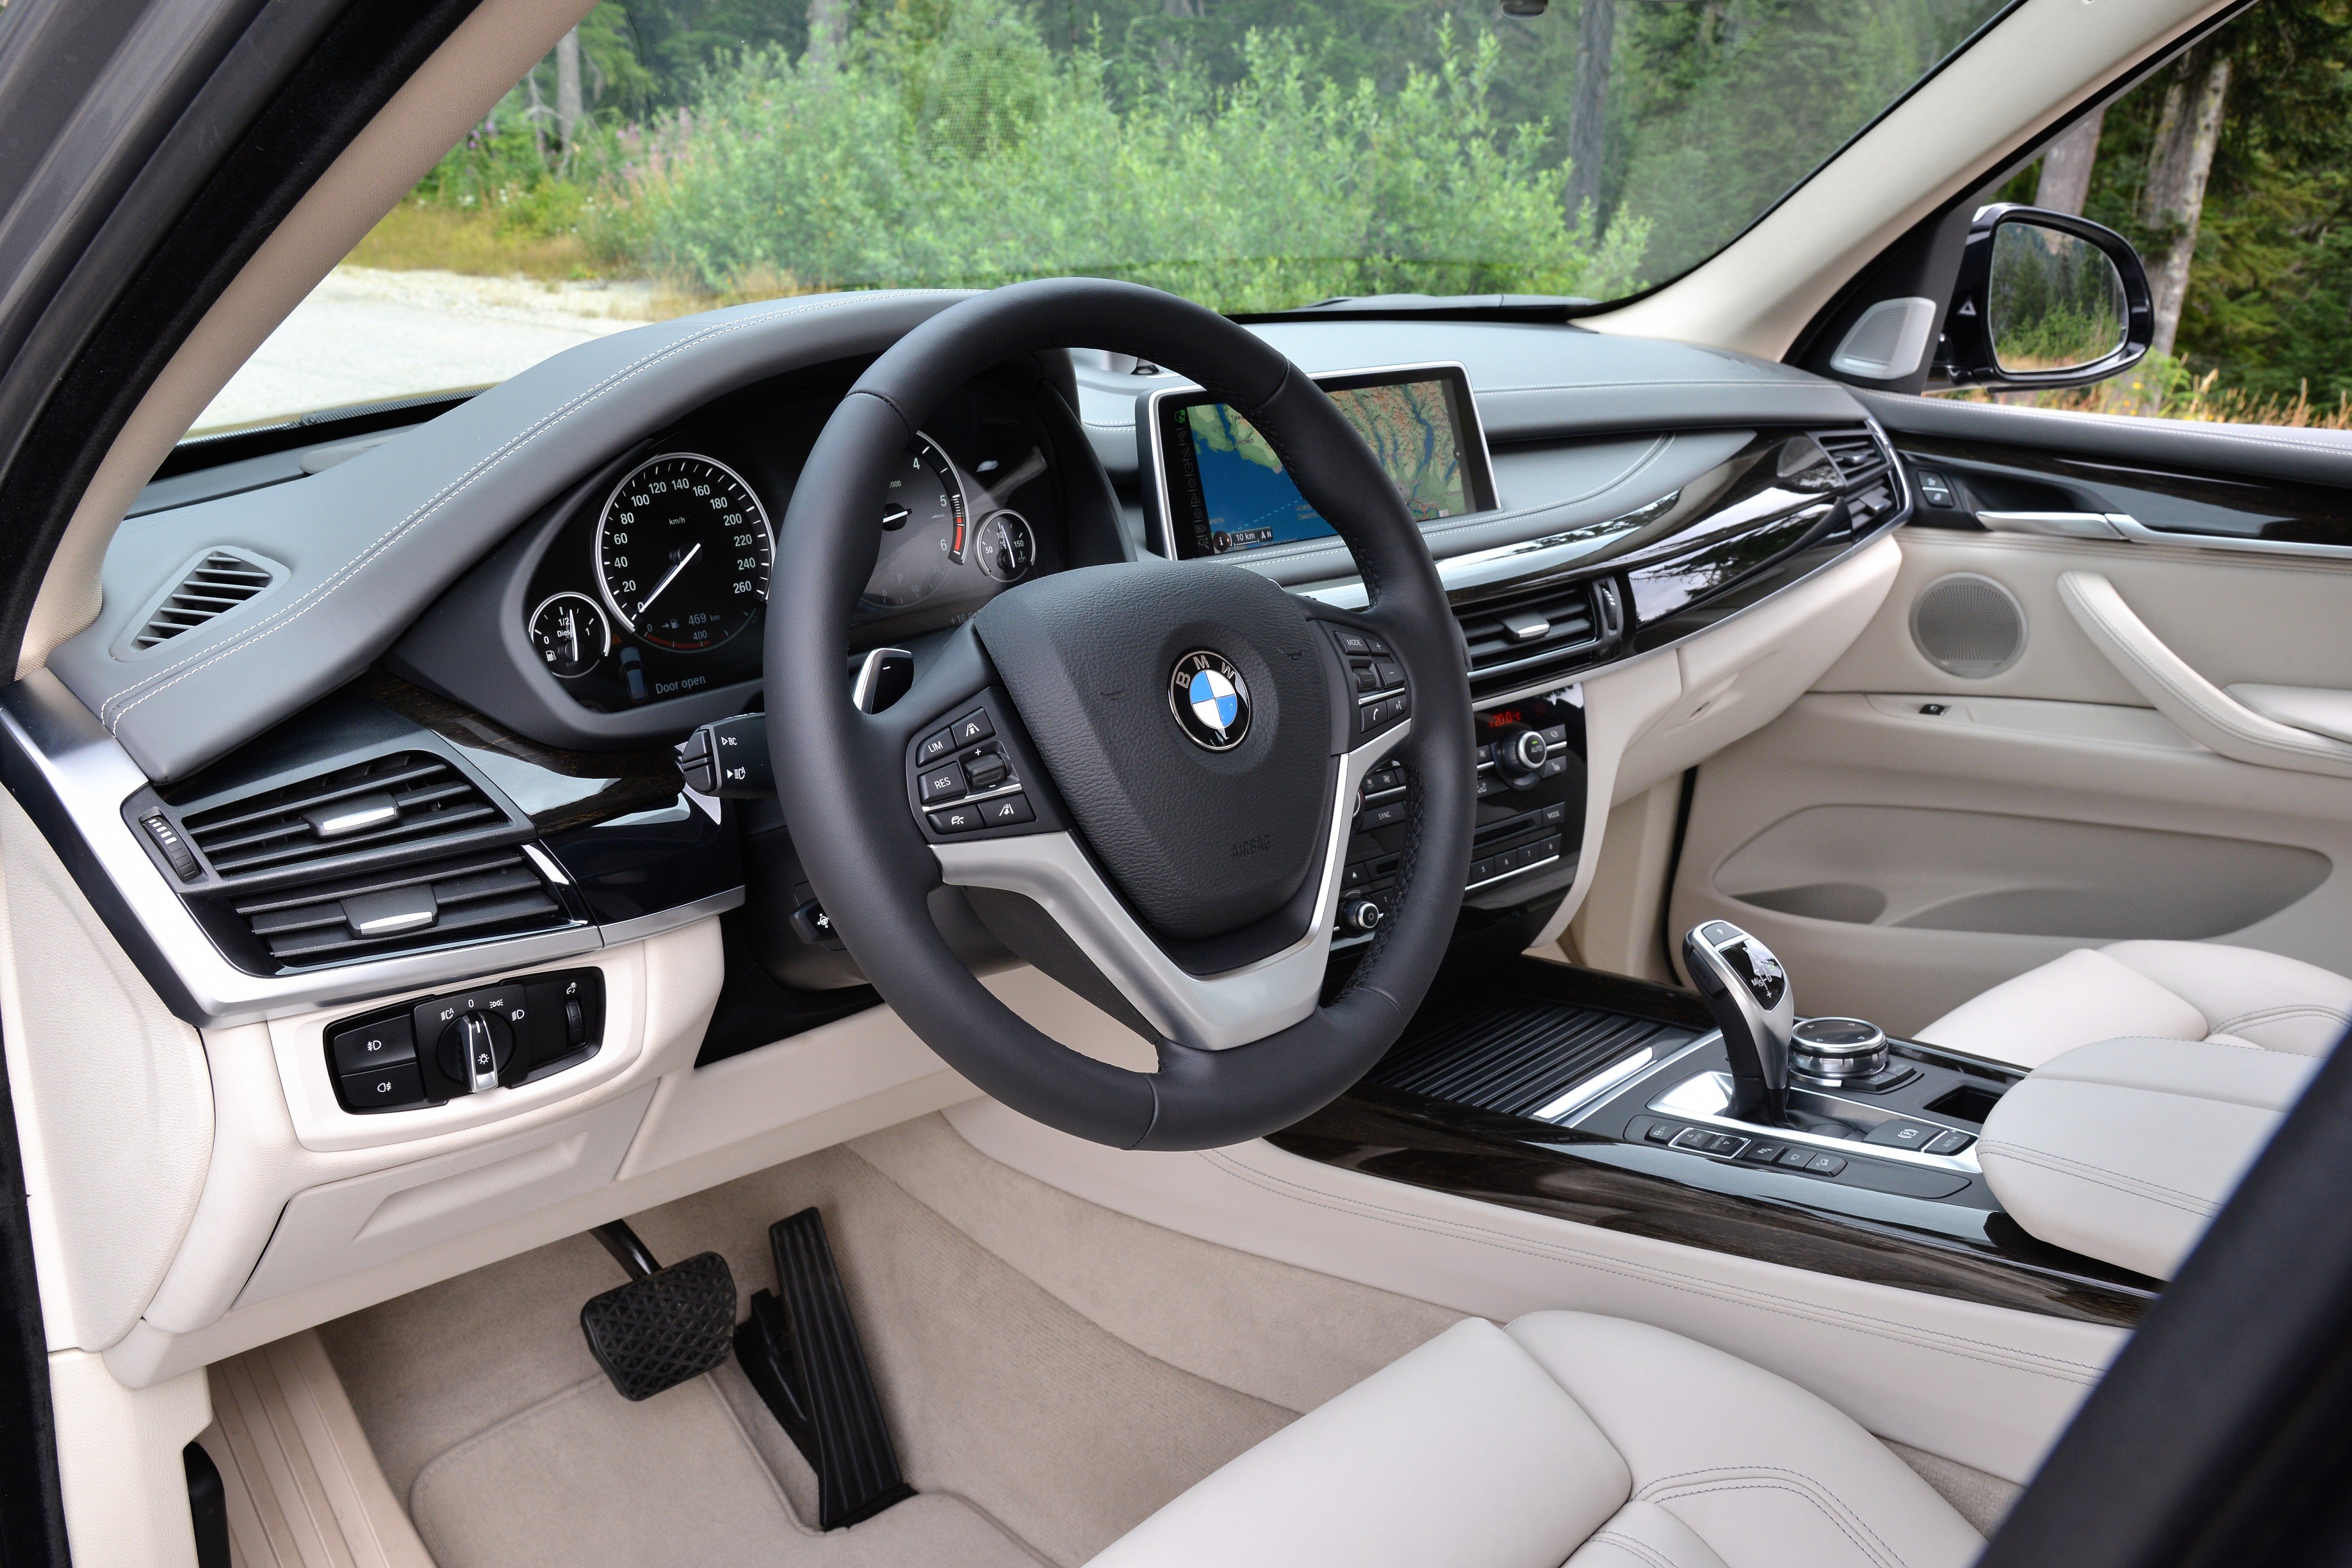 Bmw x5 комплектации. BMW x5 f15. BMW x5 Interior 2013. БМВ х5 2014. BMW x5 XDRIVE салон.